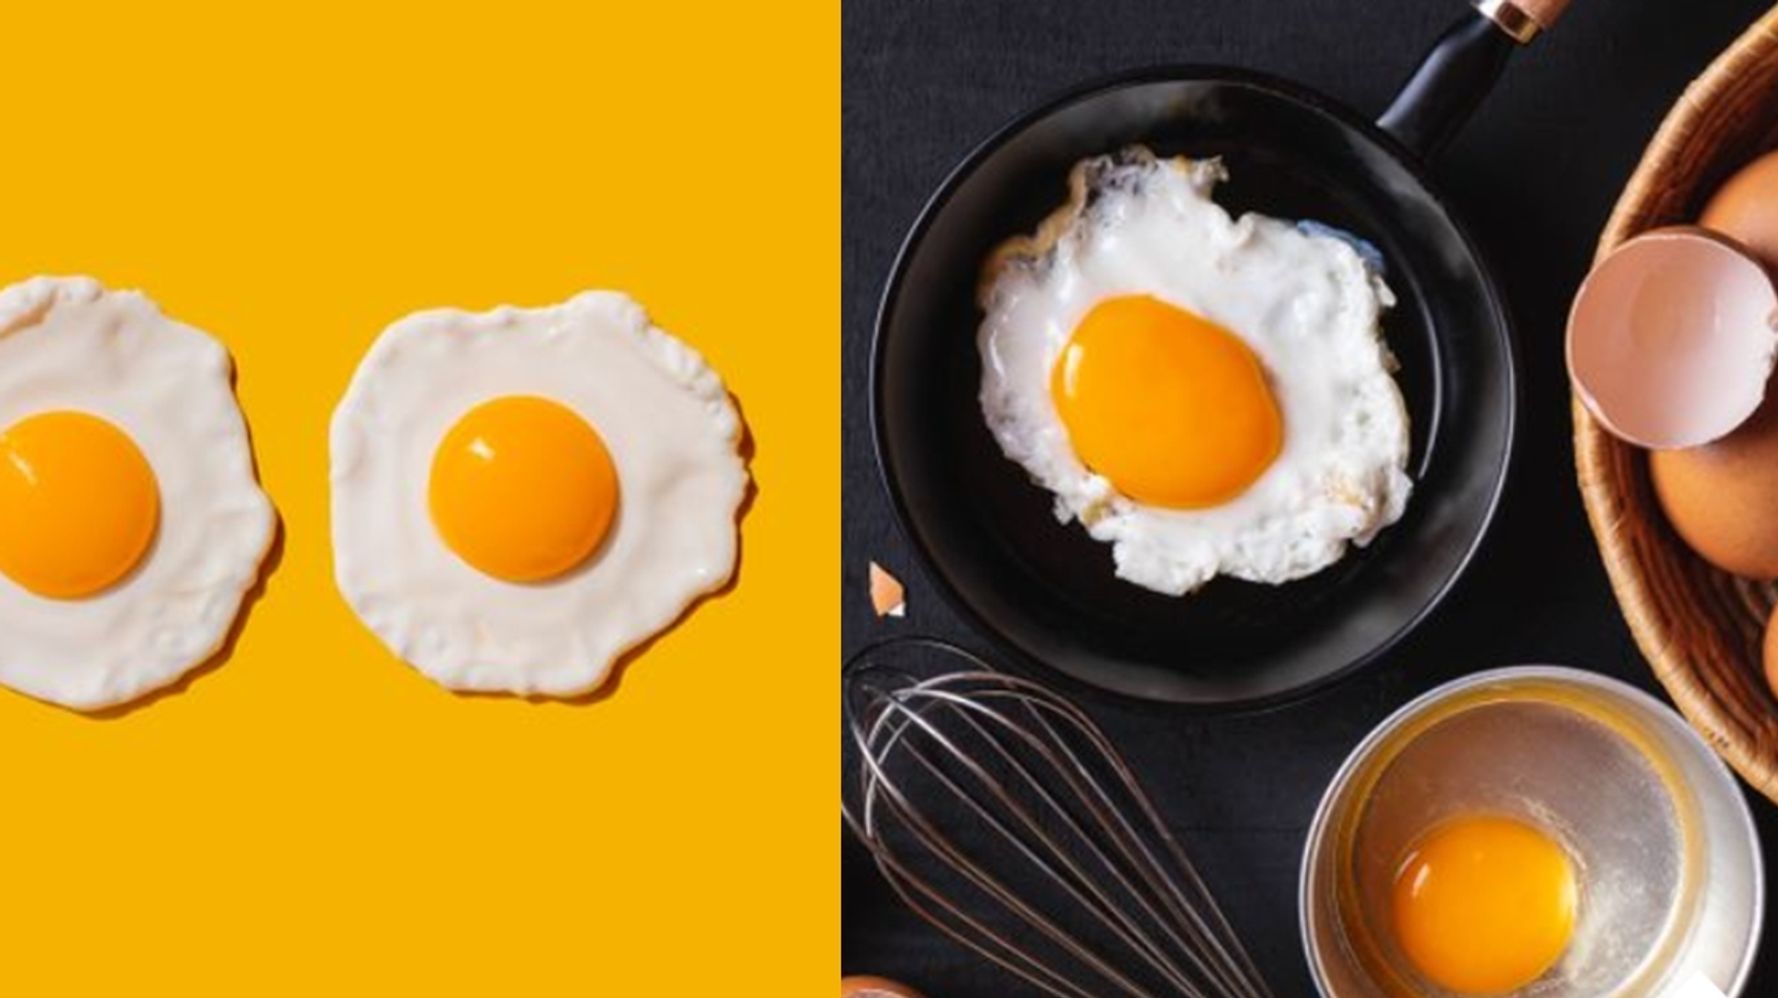 계란후라이를 요리할 때 사람들이 가장 많이 하는 실수와 실패 없이 완벽하게 만드는 간단한 비법 (셰프 팁 5) | 허프포스트코리아 LIFE